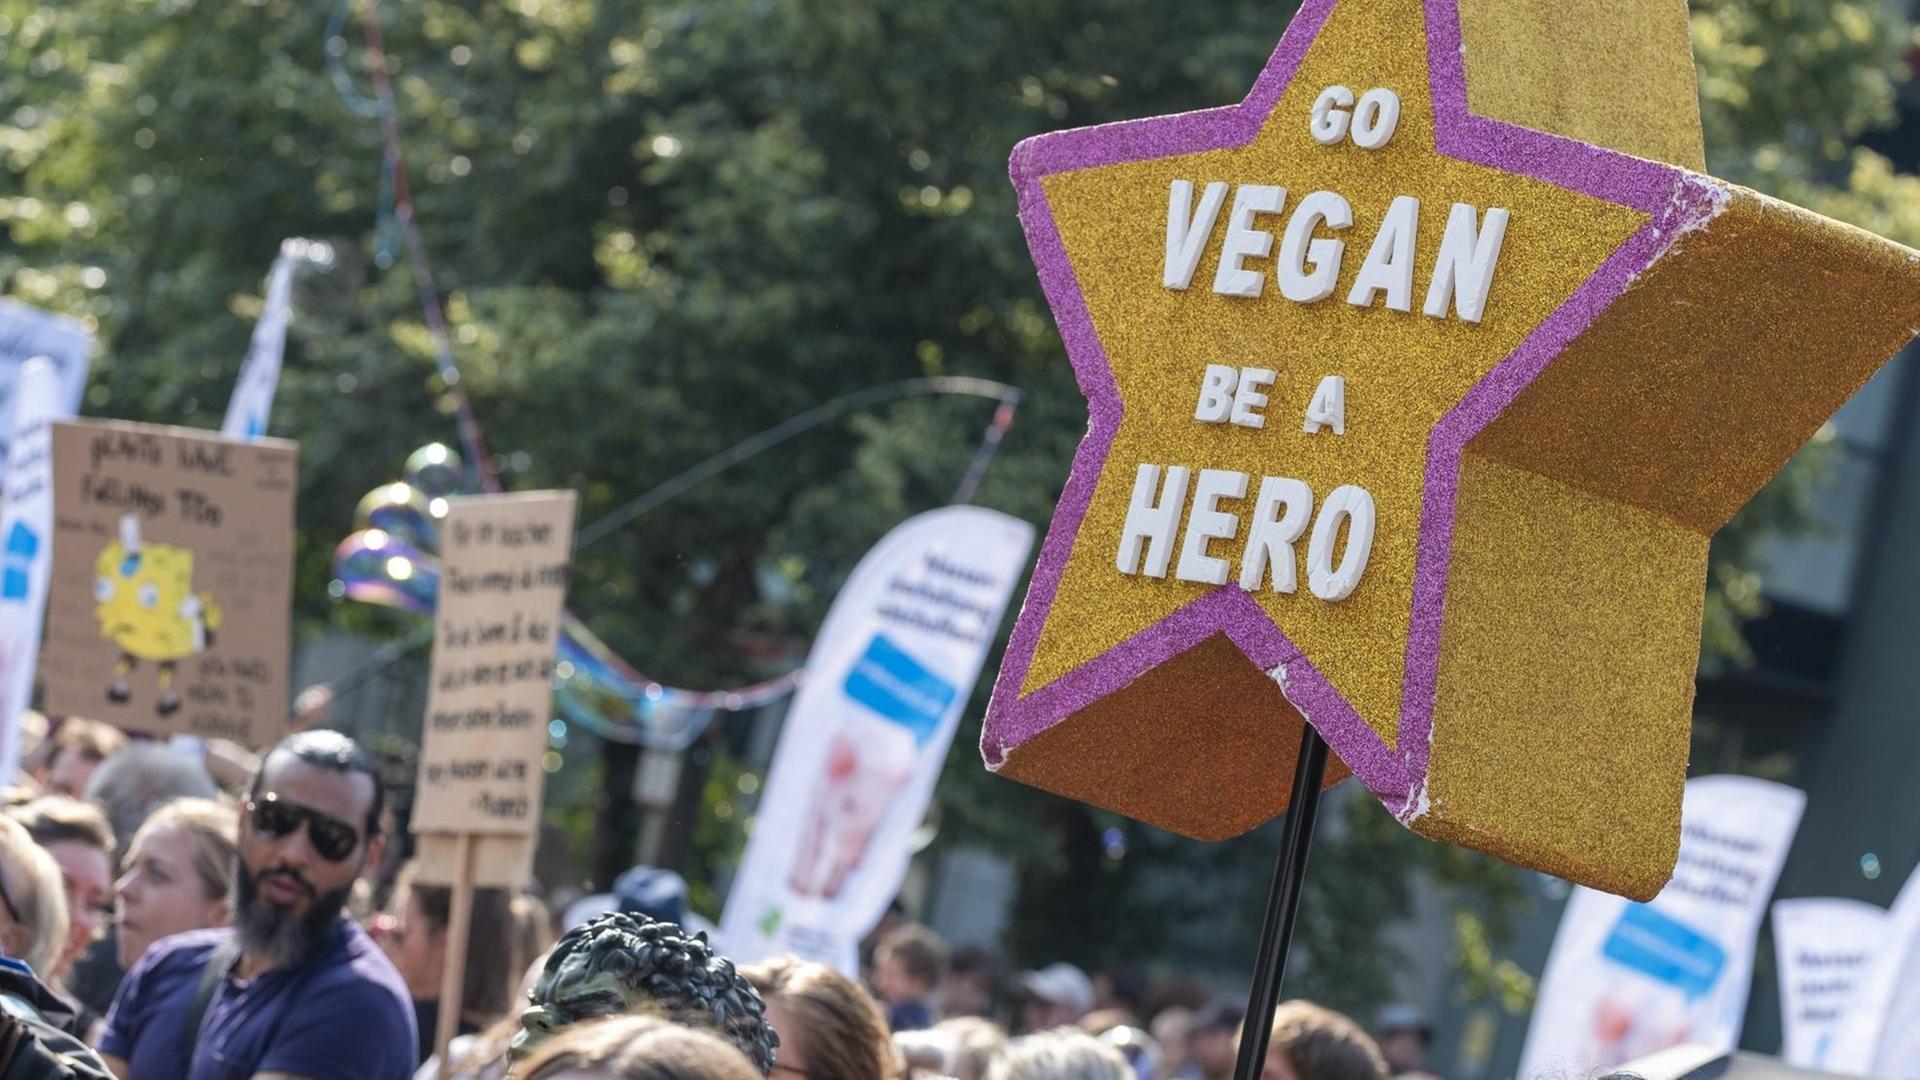 Menschen protestieren für mehr Tierschutz. Auf einem fünfzackigen Stern im Vordergrund steht: "GO VEGAN BE A HERO"